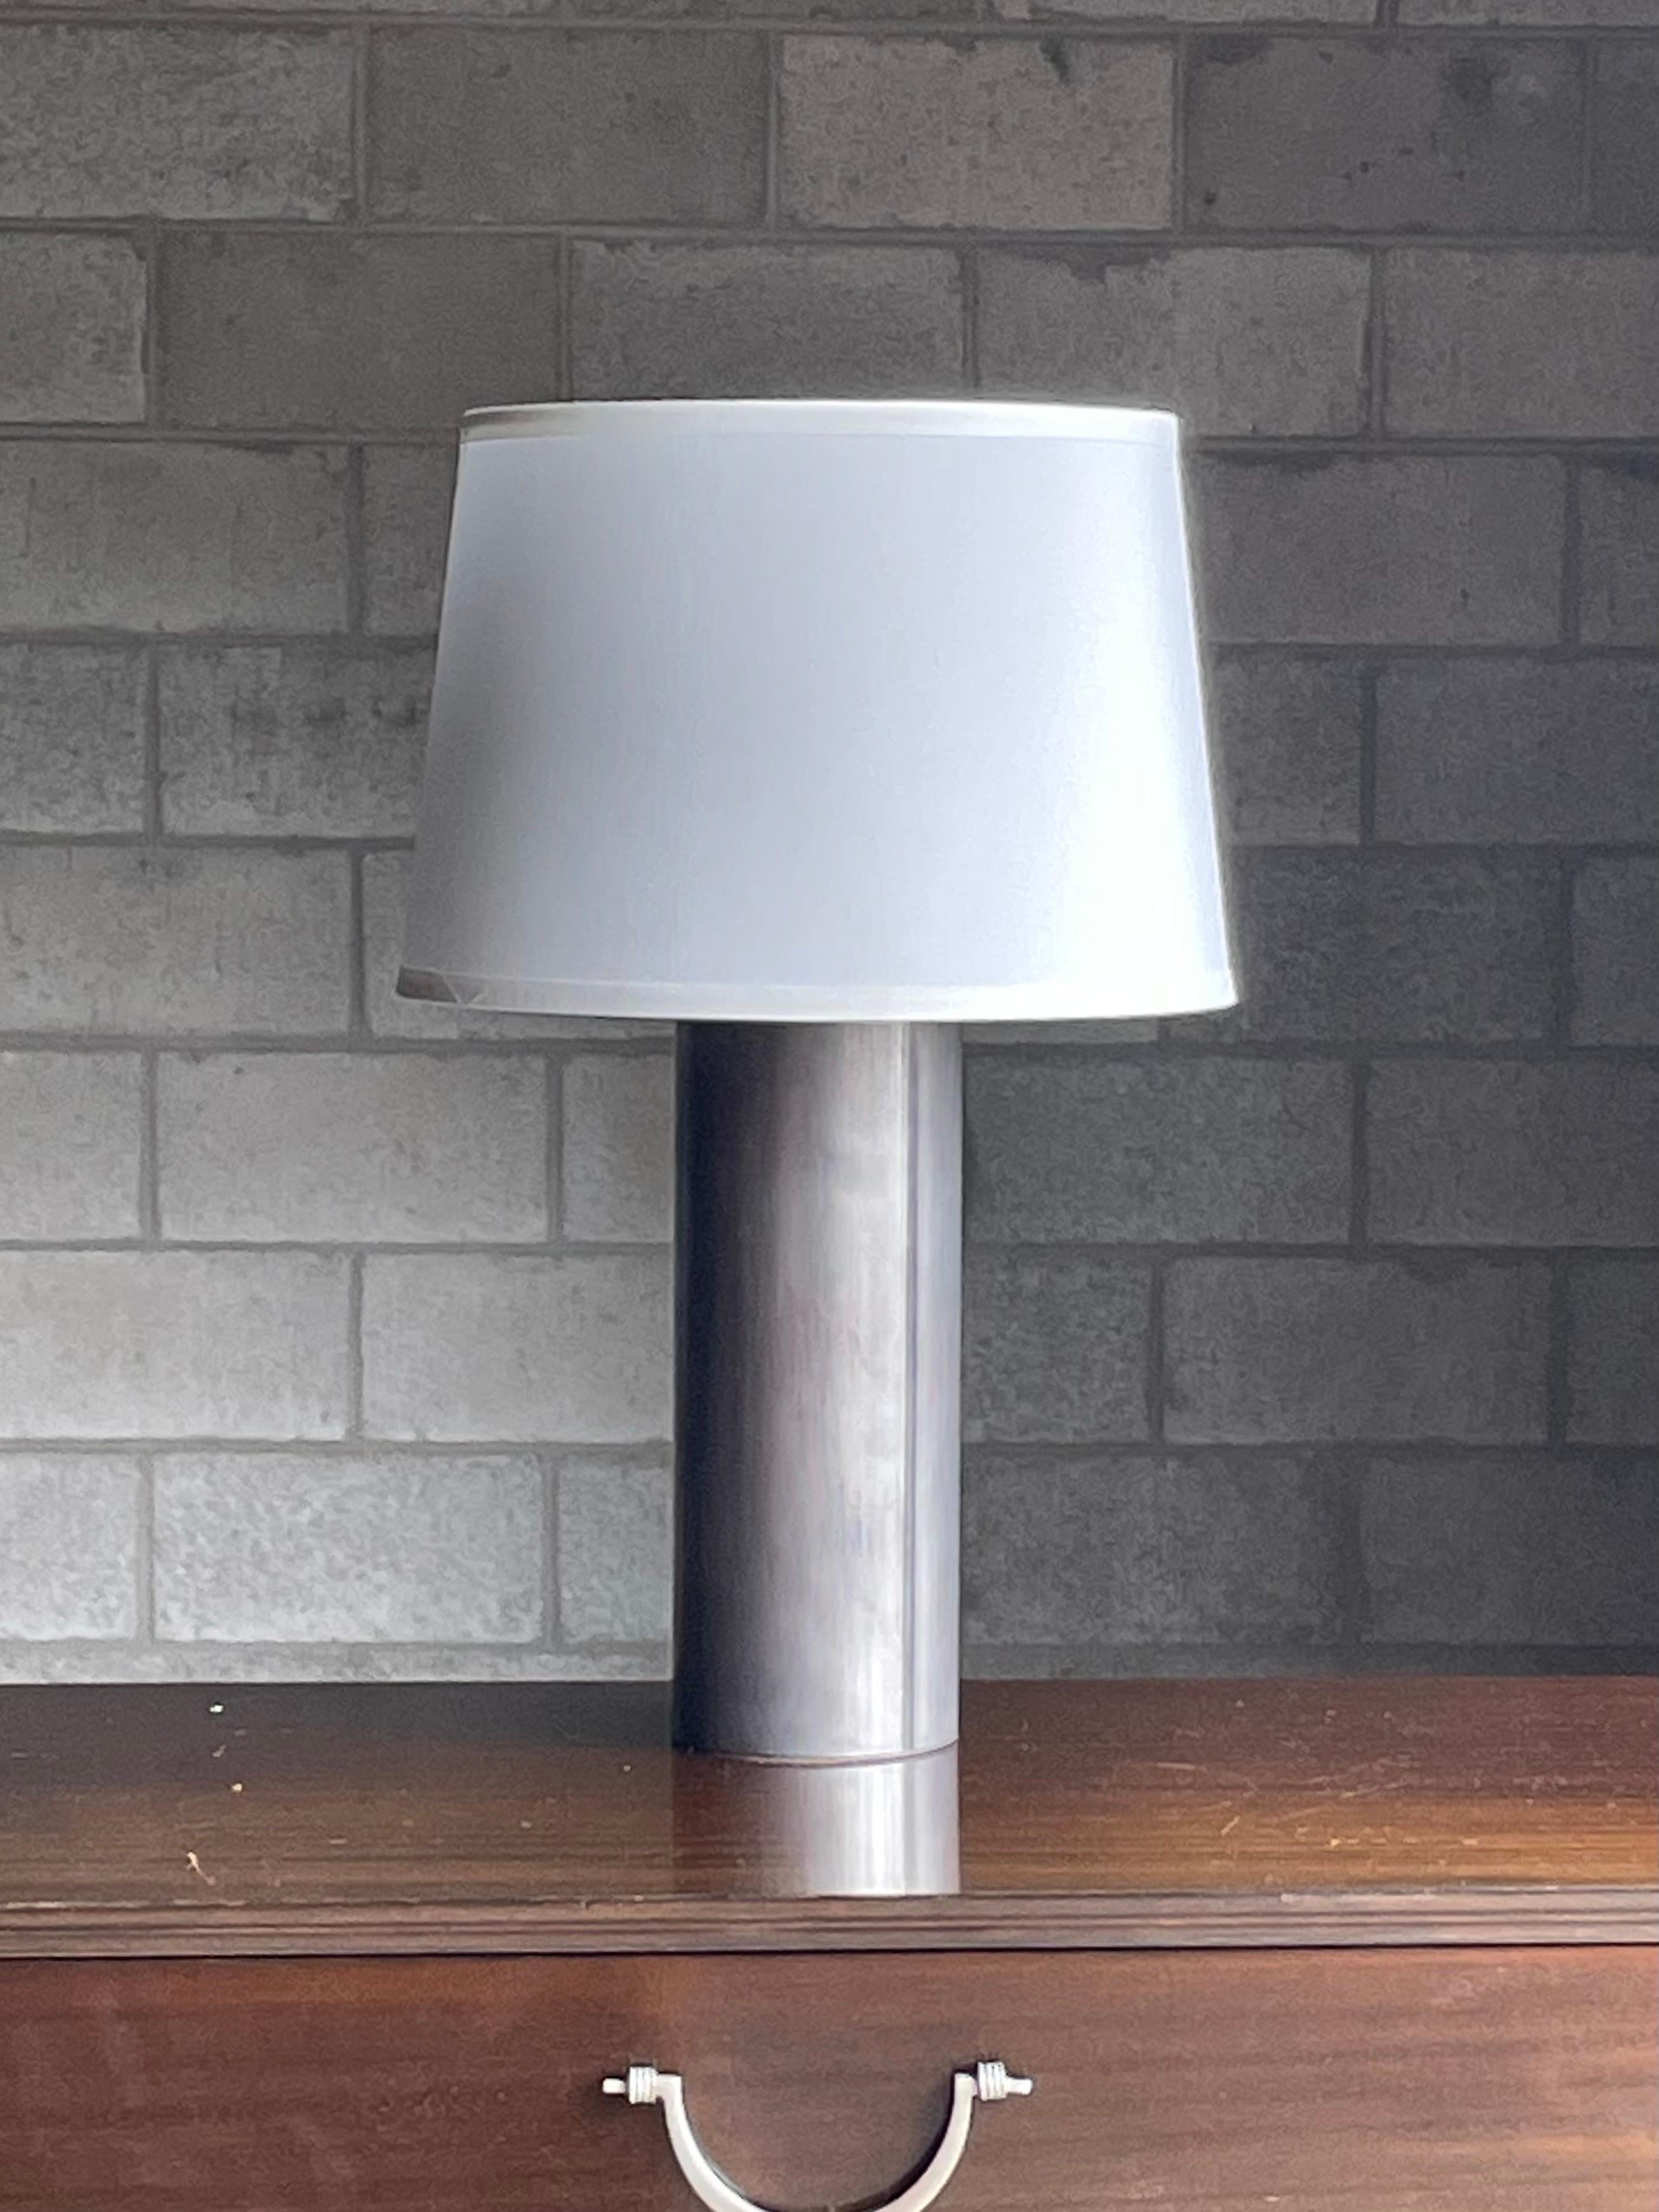 Lampe de table inhabituelle à cylindre en métal dans le style de George Kovacs et Robert Sonneman. Il semble que ce soit un corps en acier inoxydable. Il dégage une merveilleuse atmosphère industrielle, minimaliste et moderniste qui pourrait